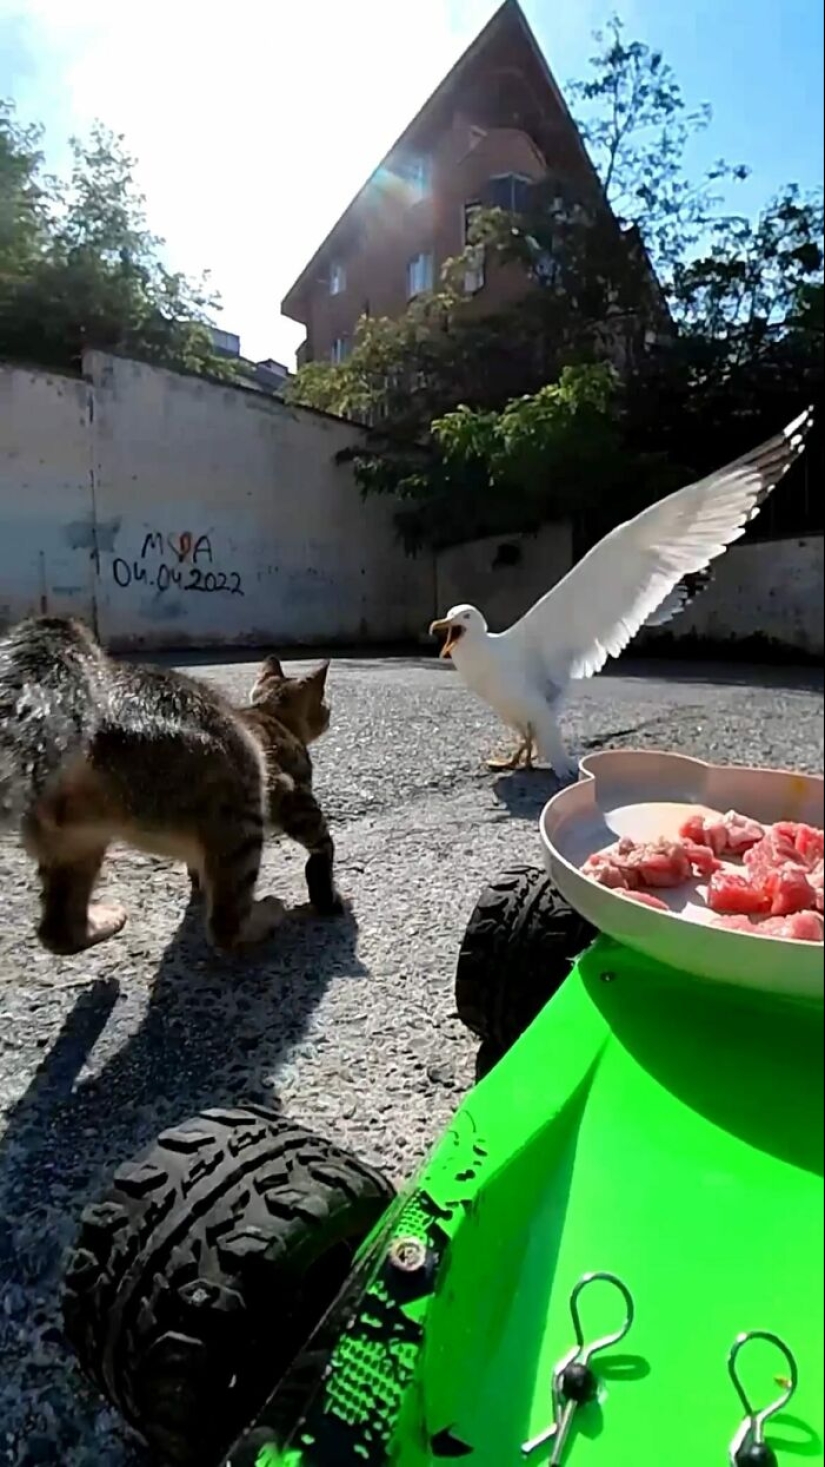 8 veces este tipo usó un dron y un auto a control remoto para encontrar y alimentar gatos callejeros